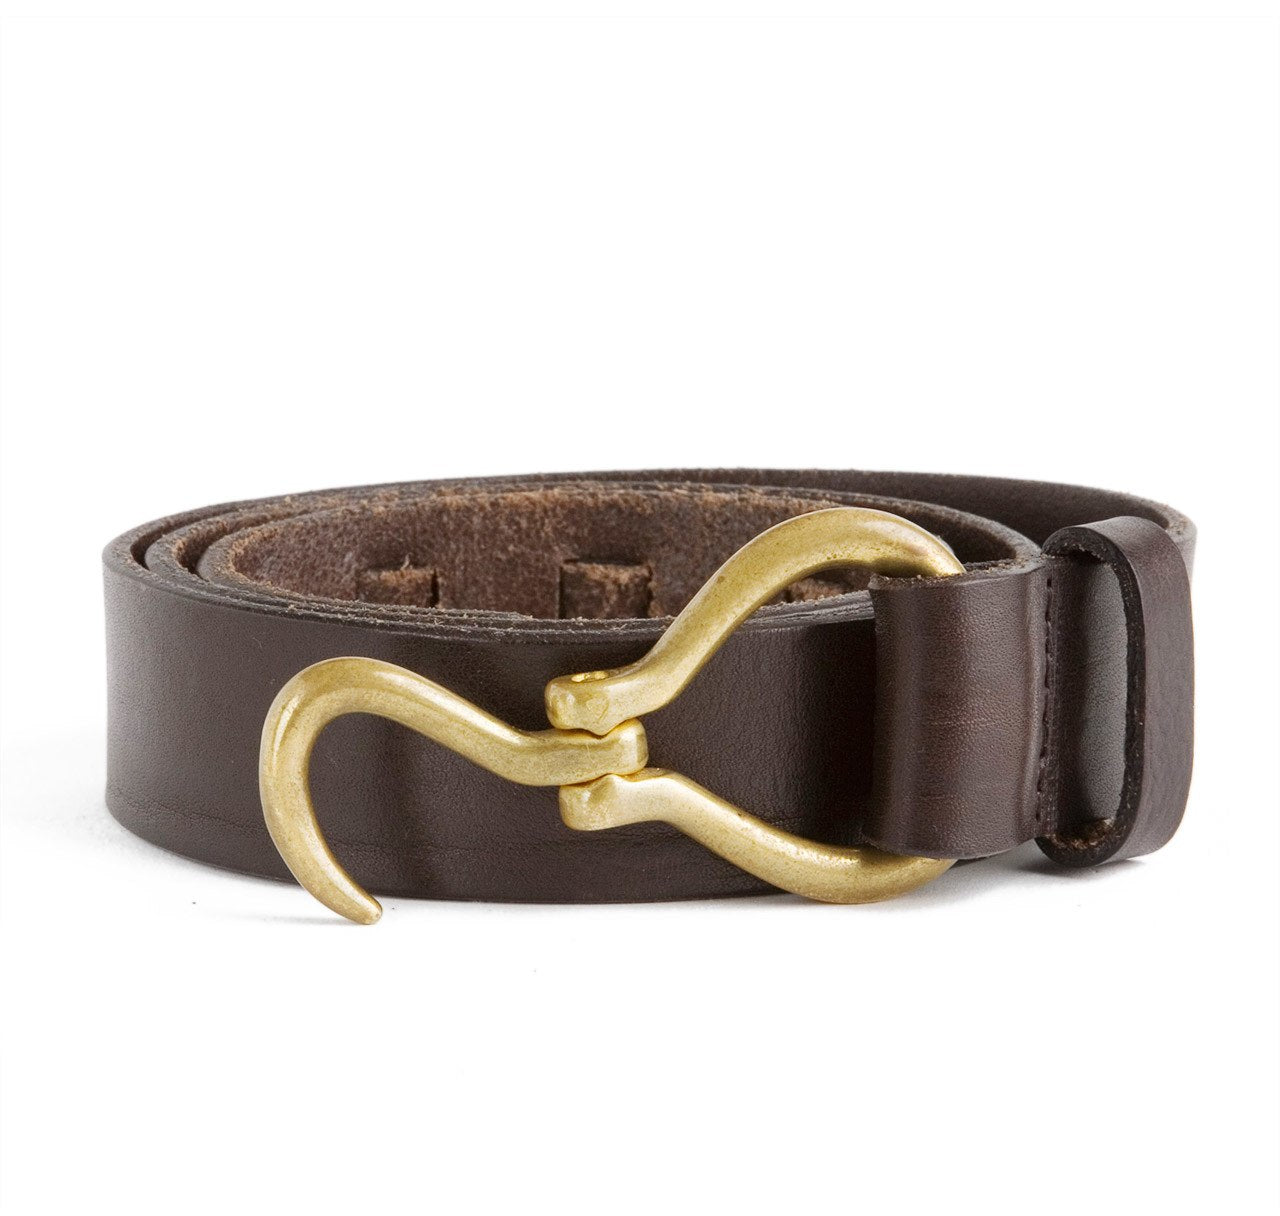 Sir Jack's Hoof Pick Belt in Brown Leather